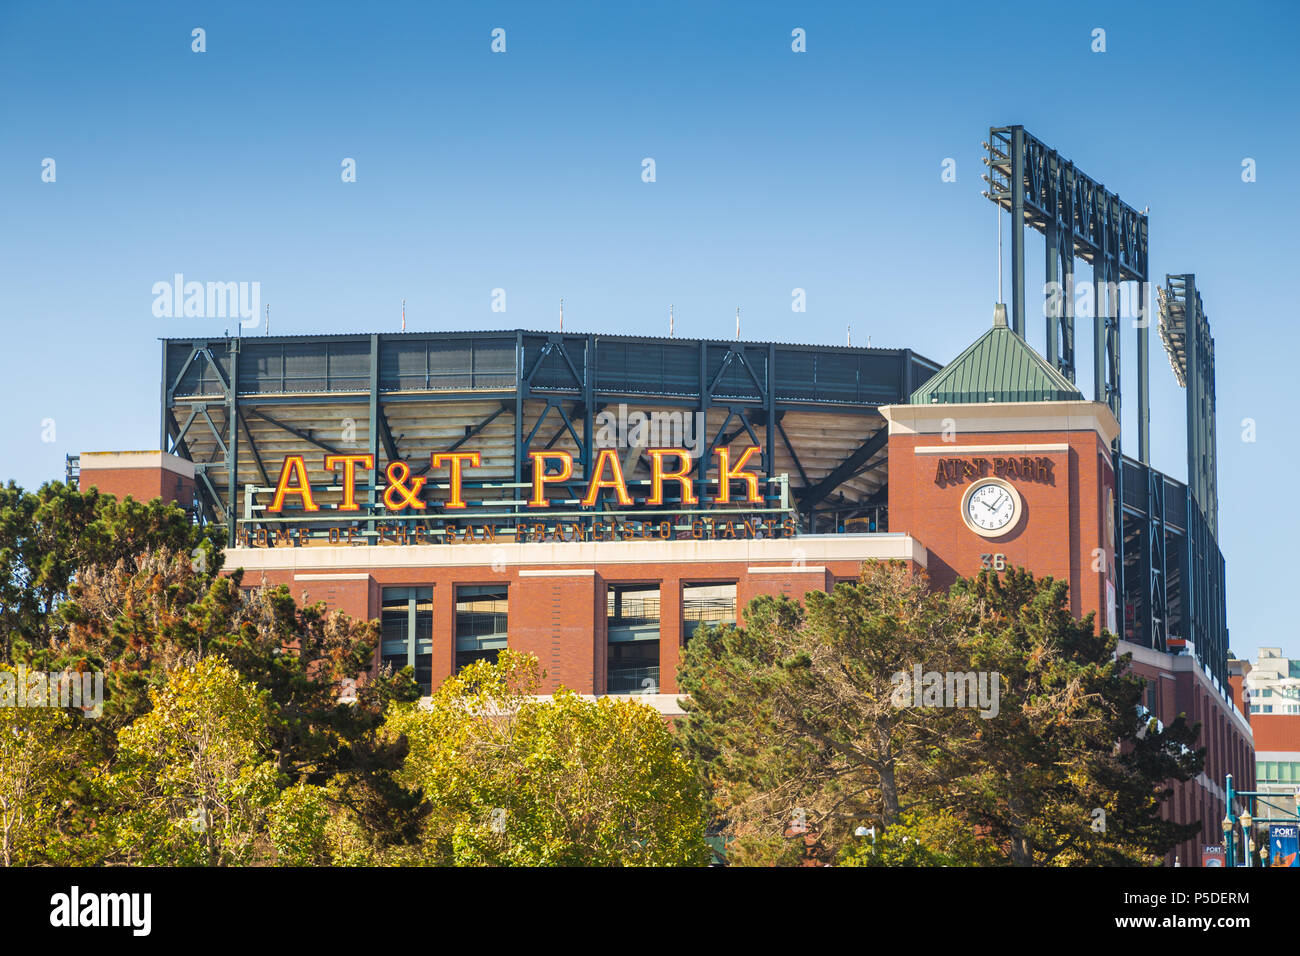 Historische AT&T Park Baseball Park, Heimat der San Francisco Giants professionellen Baseball Franchise, an einem schönen sonnigen Tag mit blauem Himmel, Kalifornien Stockfoto